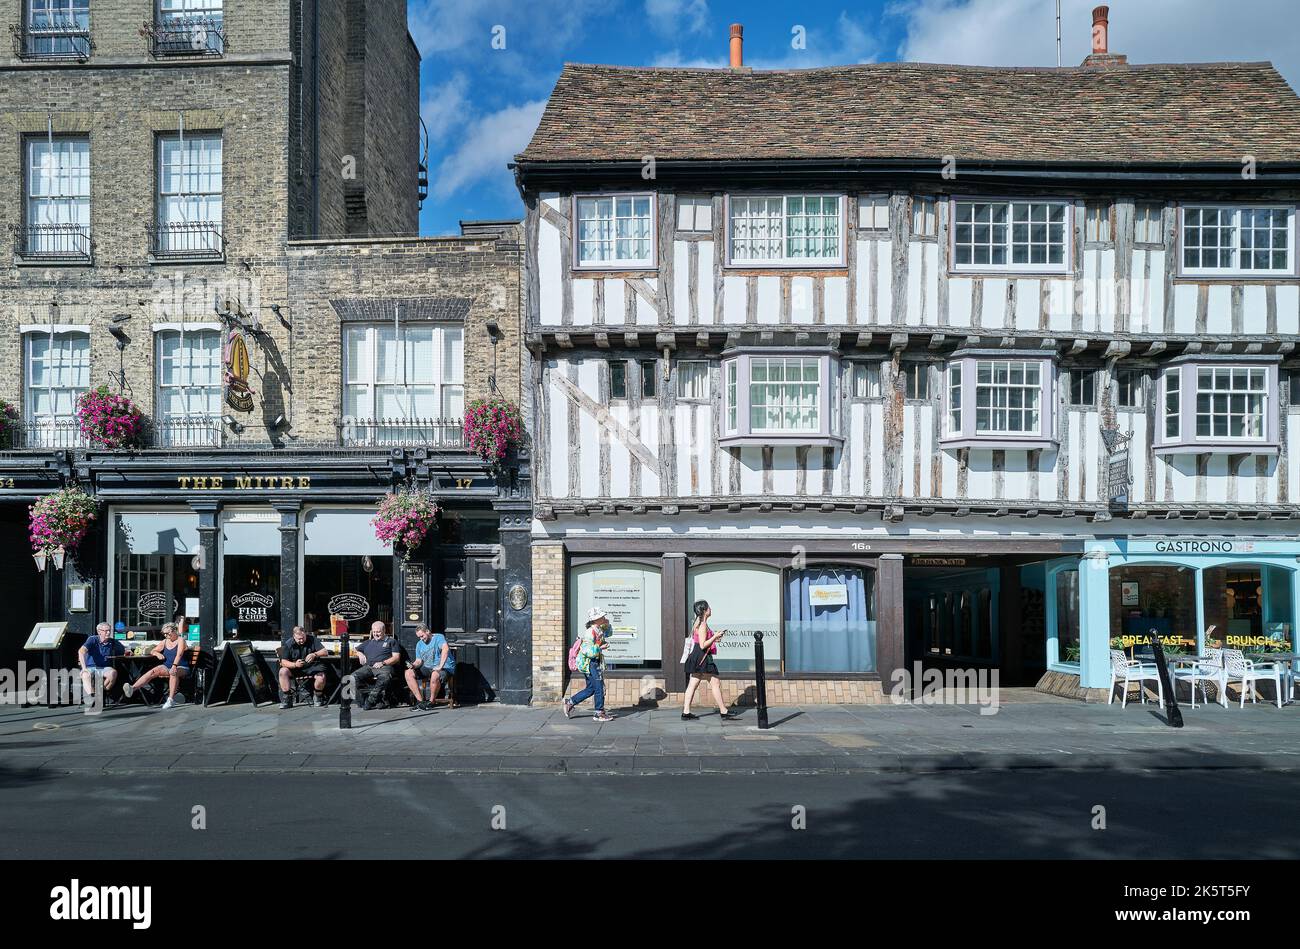 I locali si siedono fuori da un pub bevendo alcolici in una calda giornata estiva, mentre i turisti passano davanti a un negozio di abbigliamento, Bridge Street, Cambridge, Inghilterra. Foto Stock